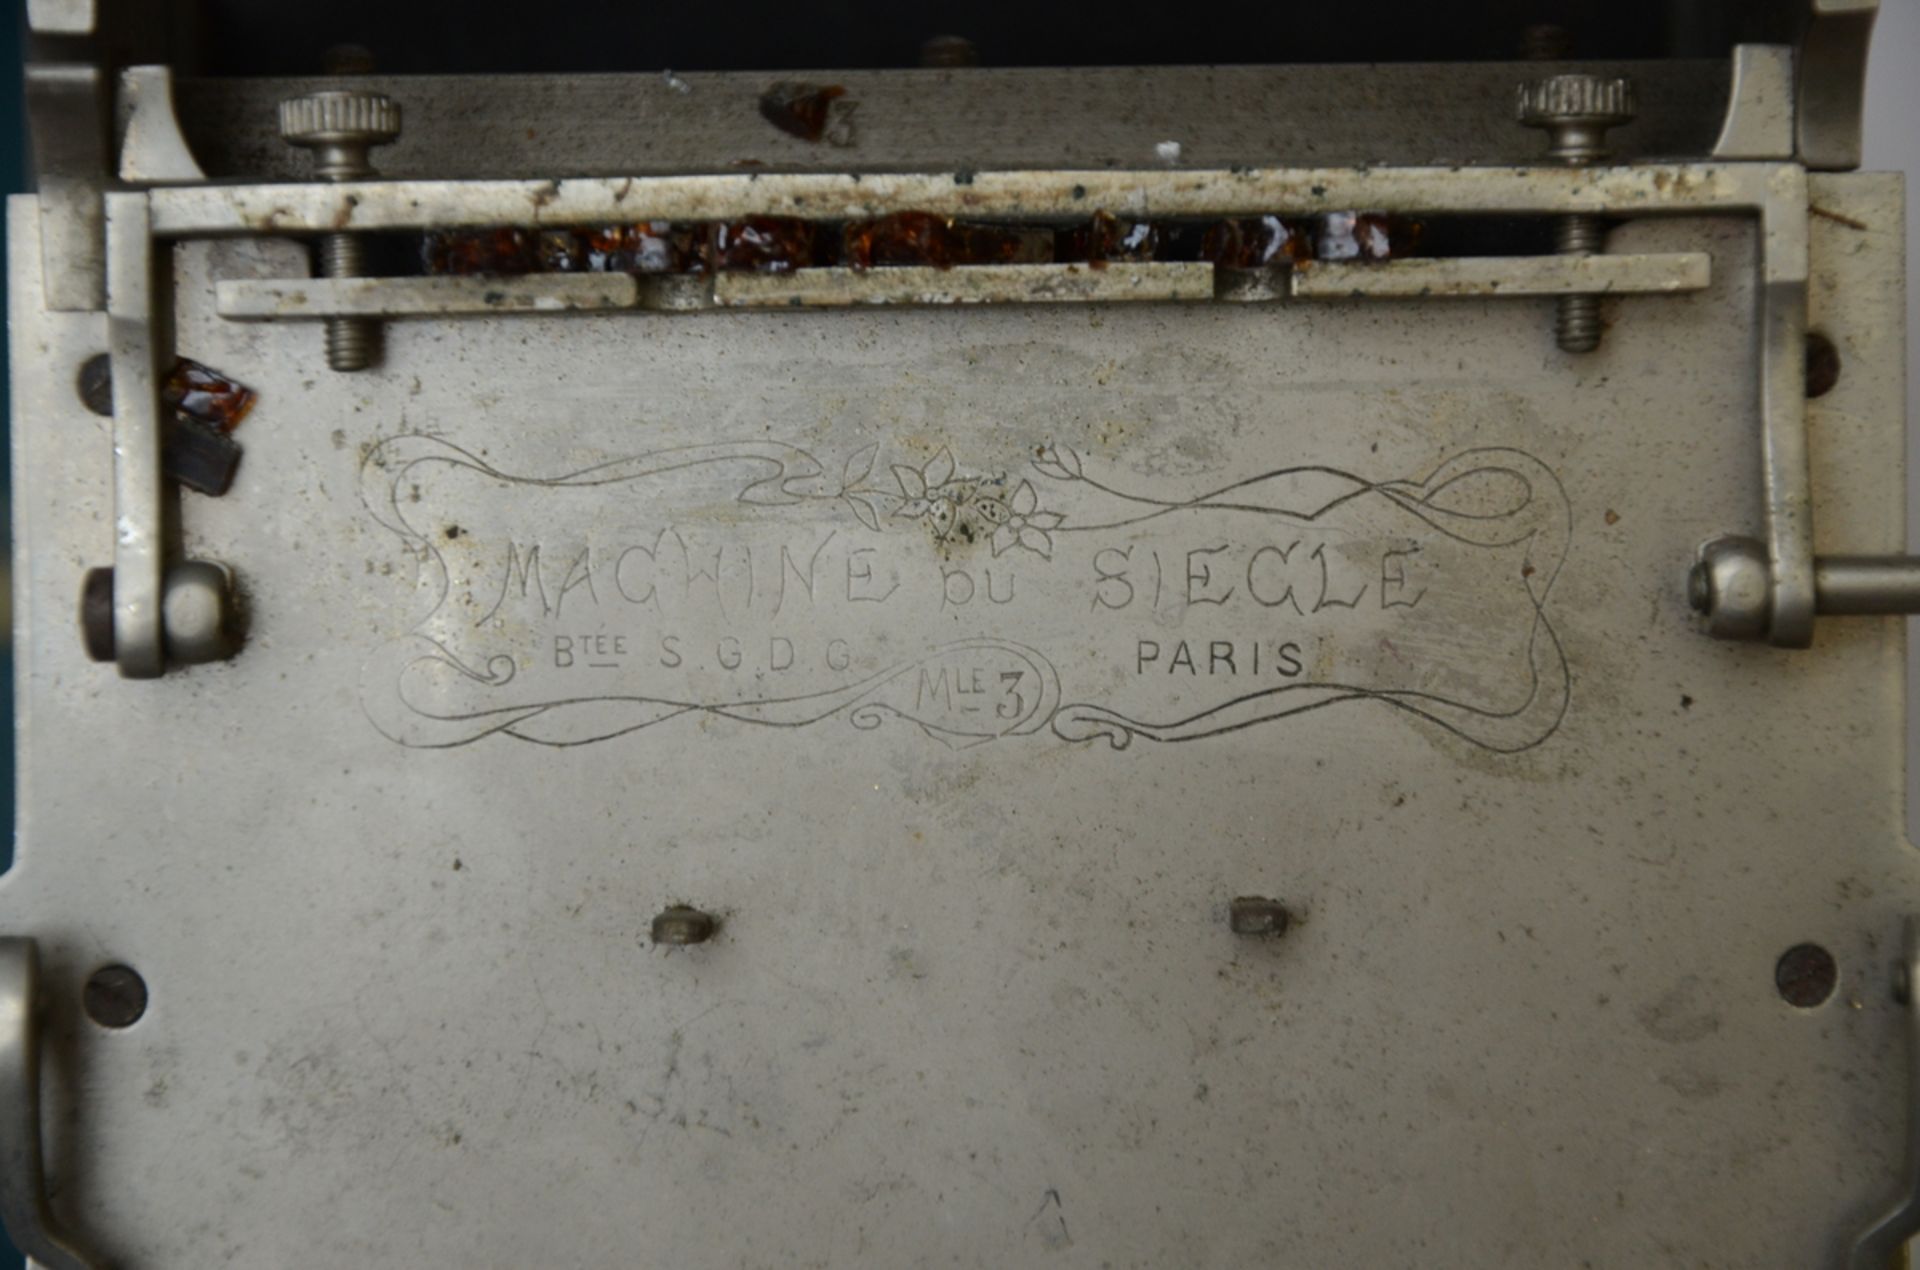 A cigarette rolling 'machine du siecle' (10x18x17.5cm) - Image 2 of 2